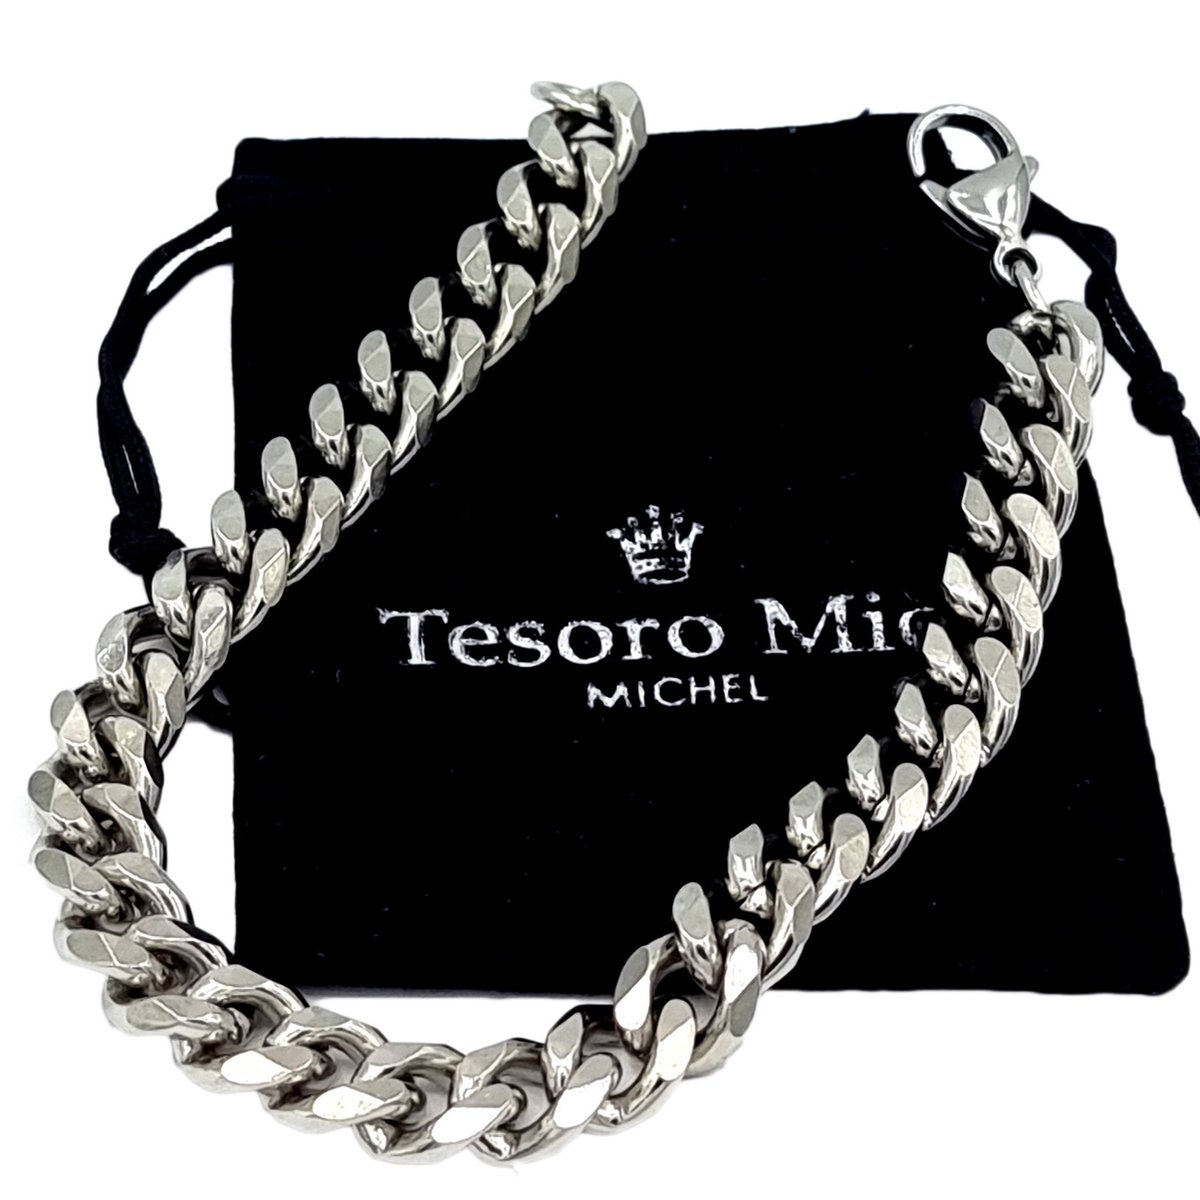 Tesoro Mio Michel – TMM 4 MEN – Stoere Armband Met Gourmet Schakel - Edelstaal – L 19 cm B 0.8 cm